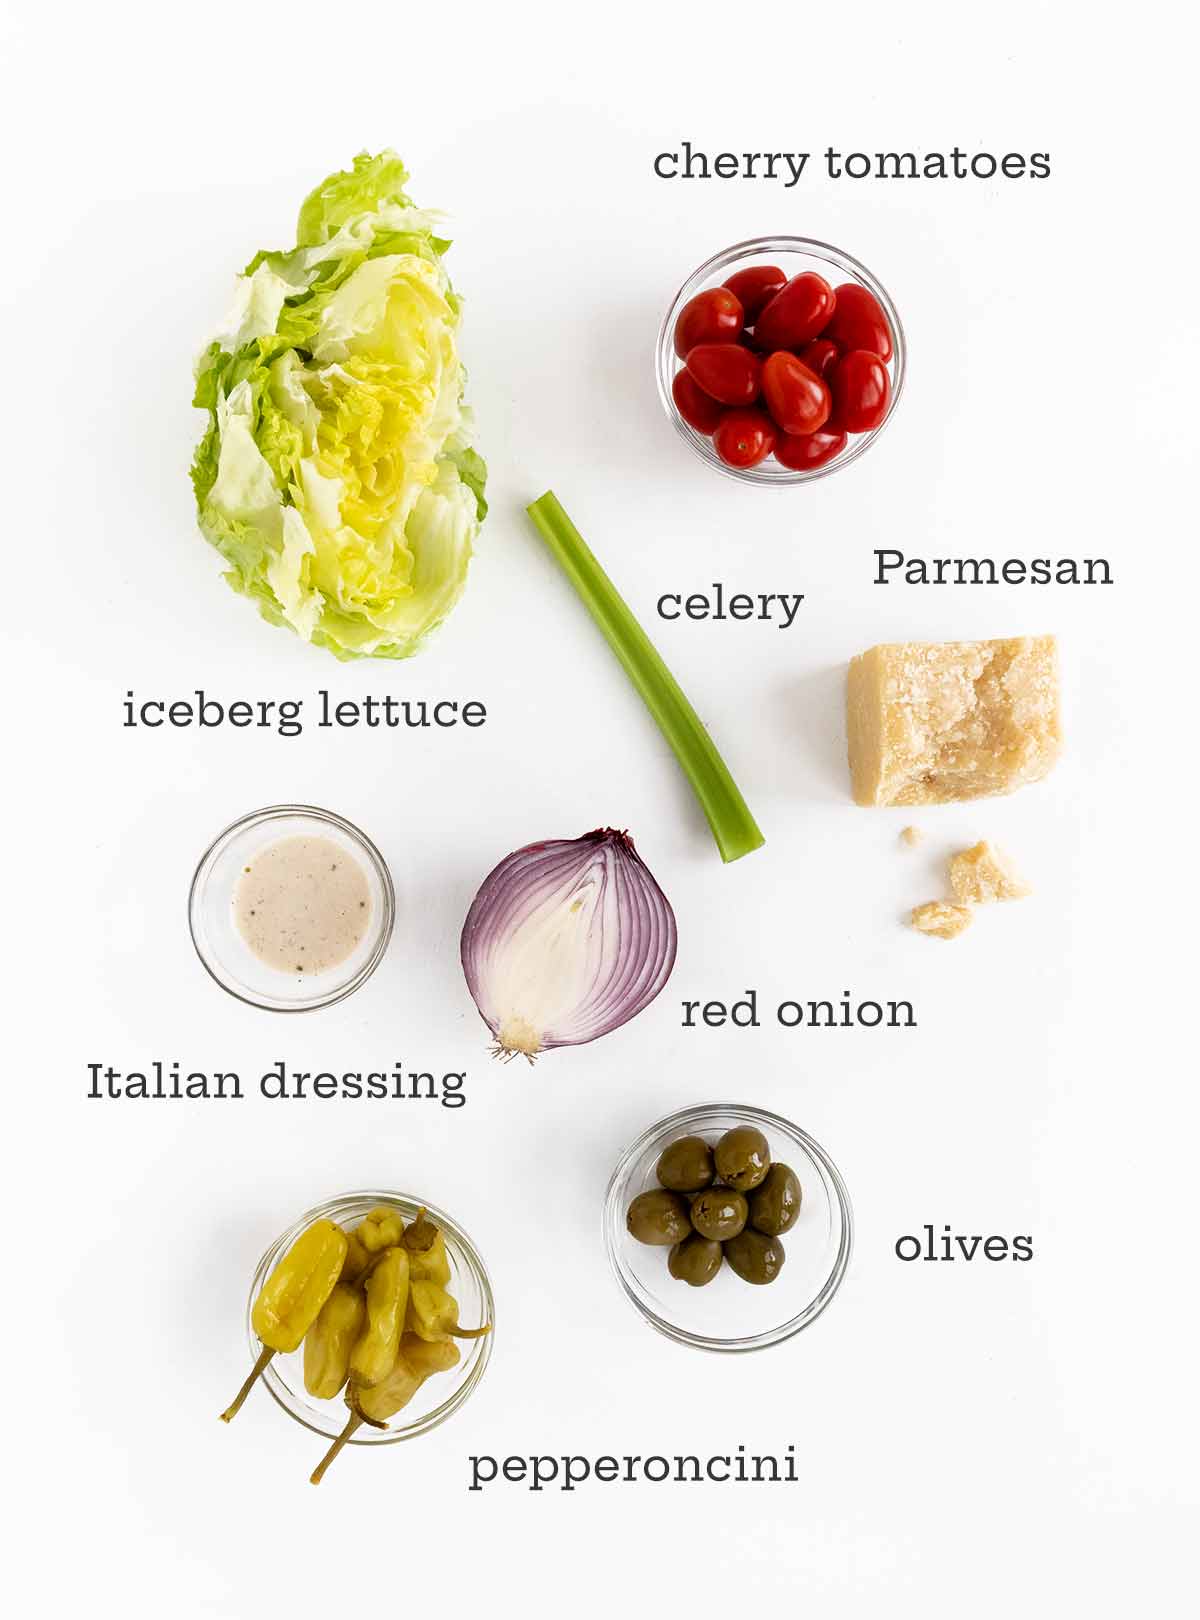 Ingredienser för italiensk sallad - sallad, tomater, selleri, parmesan, dressing, lök, oliver och pepperoncini.